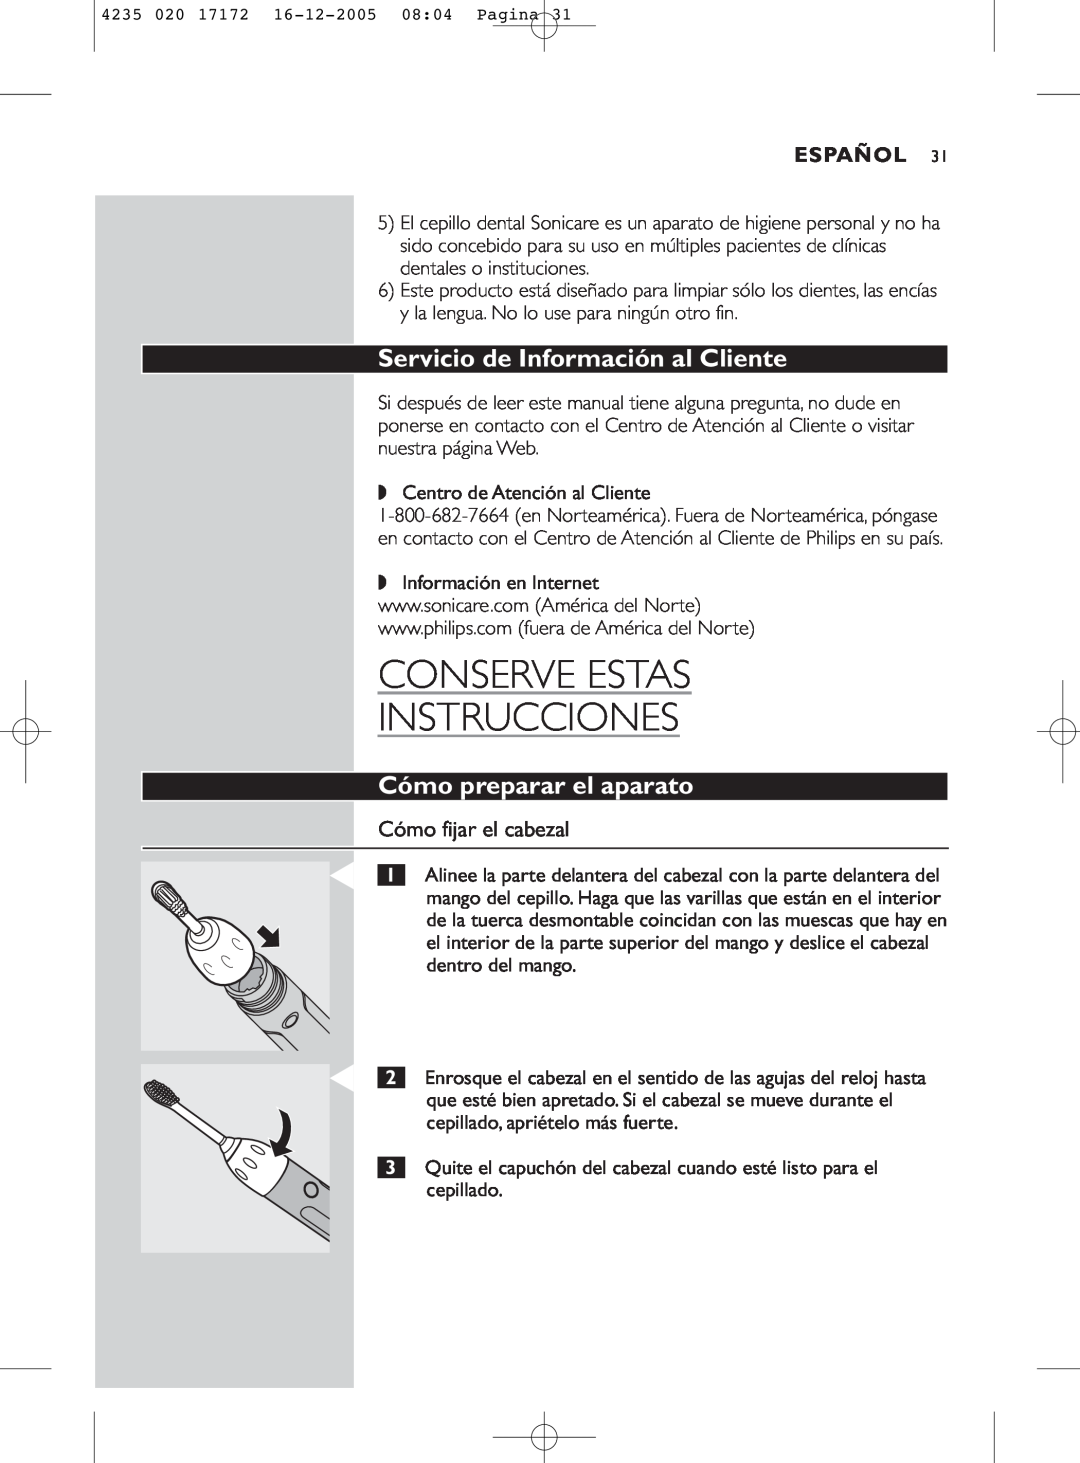 Sonicare e5000 manual Conserve Estas Instrucciones, Servicio de Información al Cliente, Cómo preparar el aparato, Español 